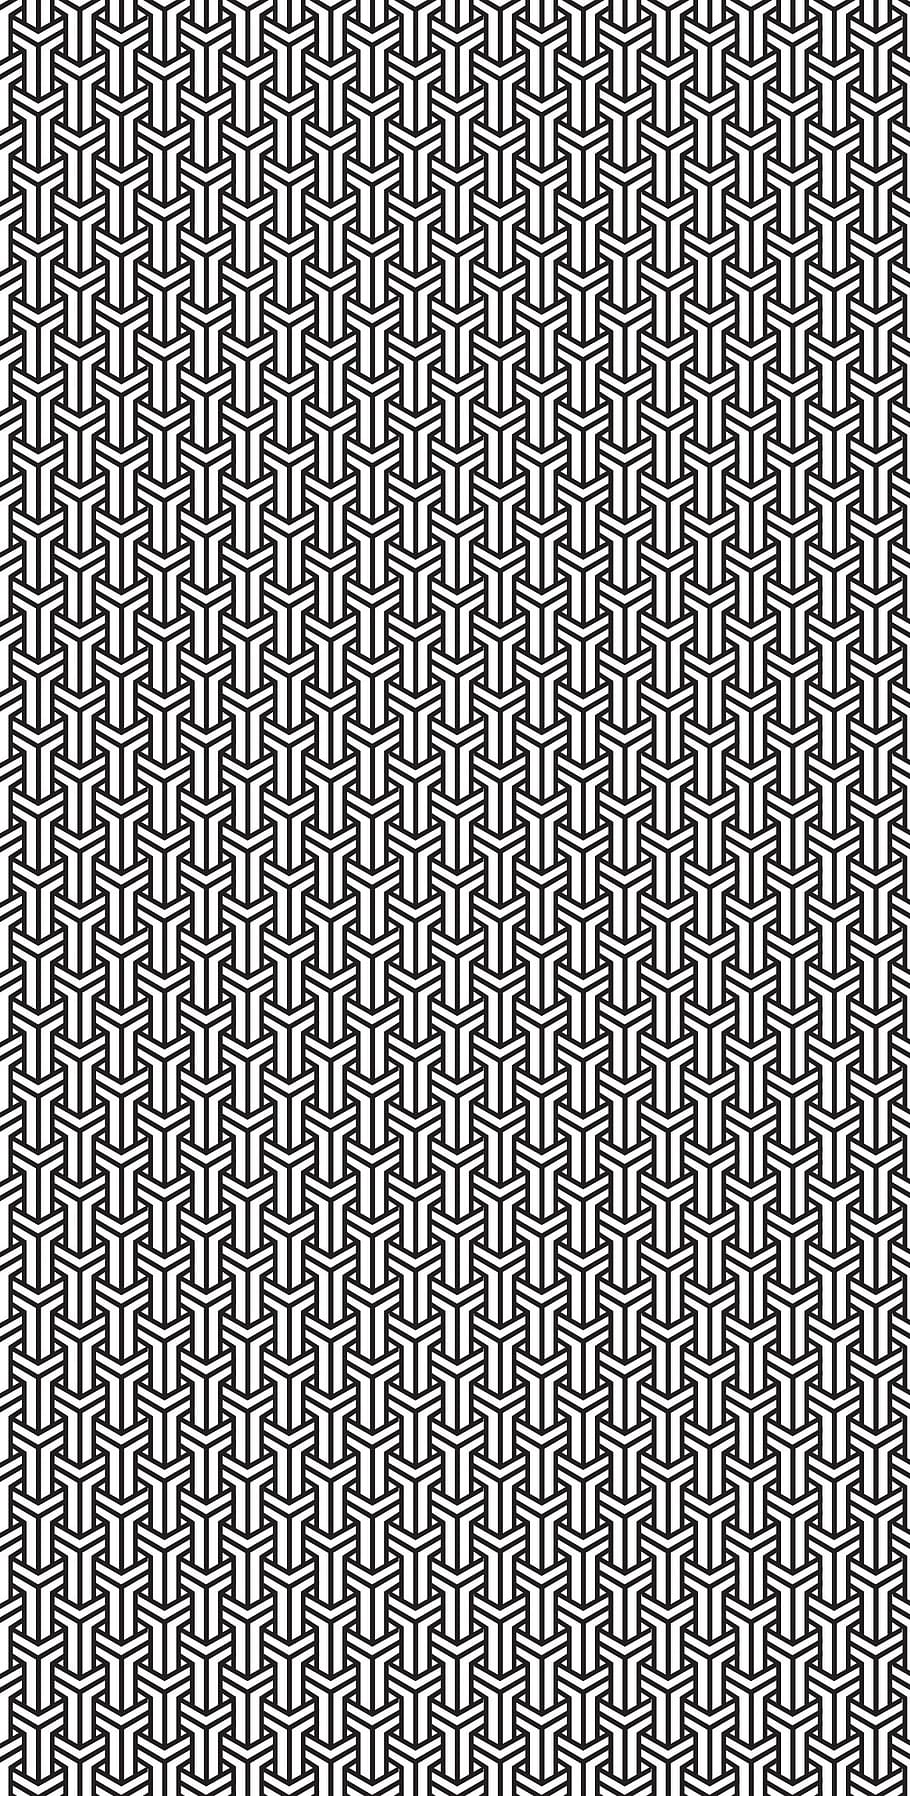 pattern, black, white, tile, interlocking, design, geometric